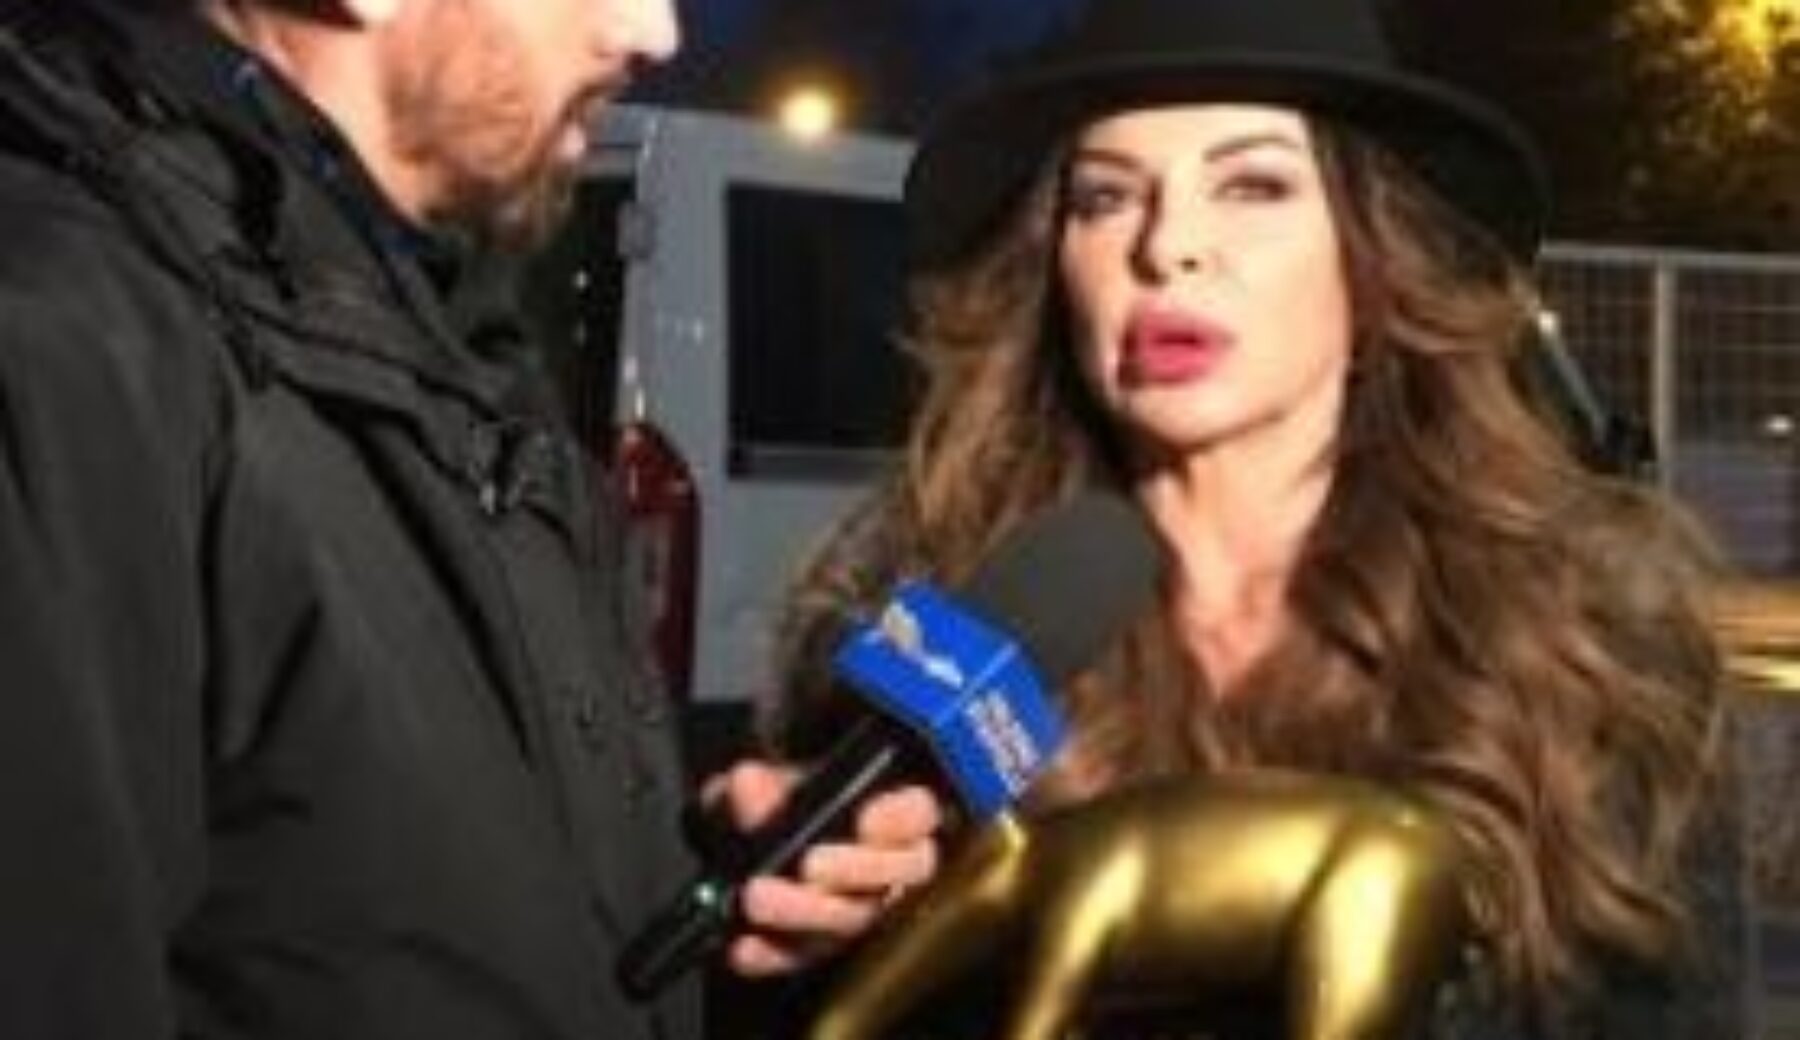 A Striscia la notizia Tapiro d’oro ad Alba Parietti per la bagarre con Selvaggia Lucarelli a “Ballando con le stelle” e su Facebook